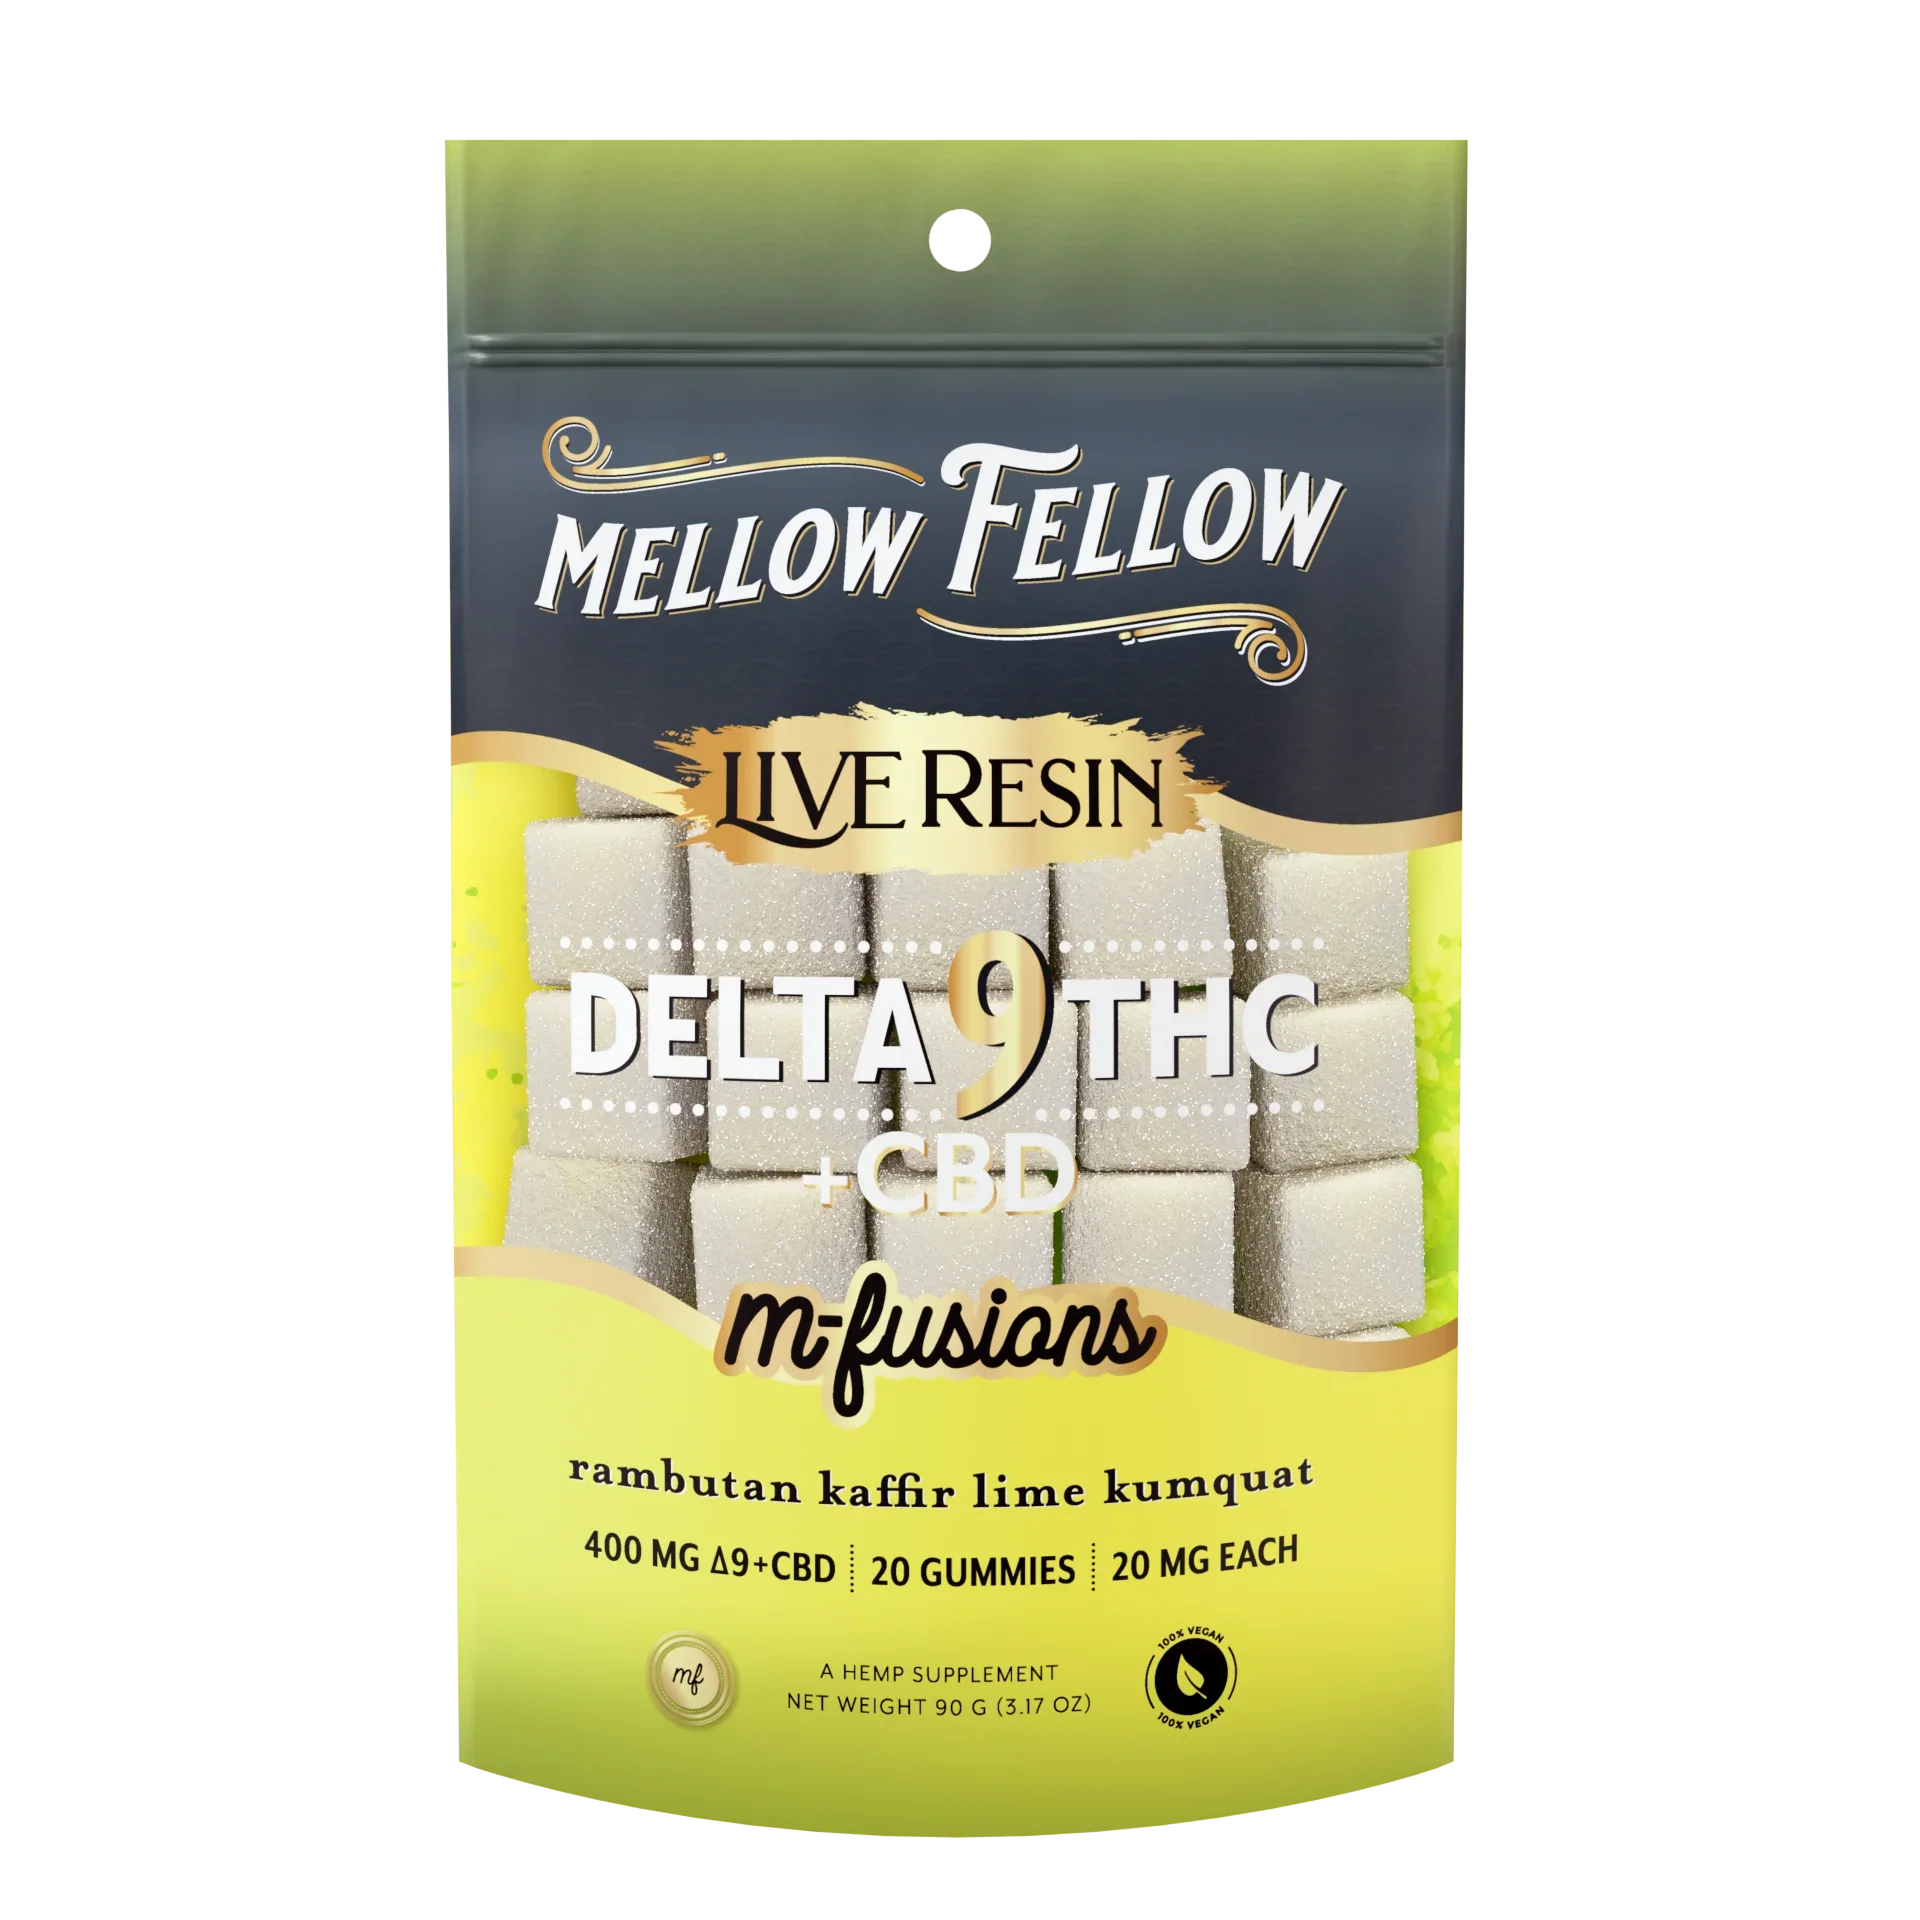 Mellow Fellow Delta 9 Live Resin Edibles 400mg - Rambutan Kaffir Lime Kumquat Best Price